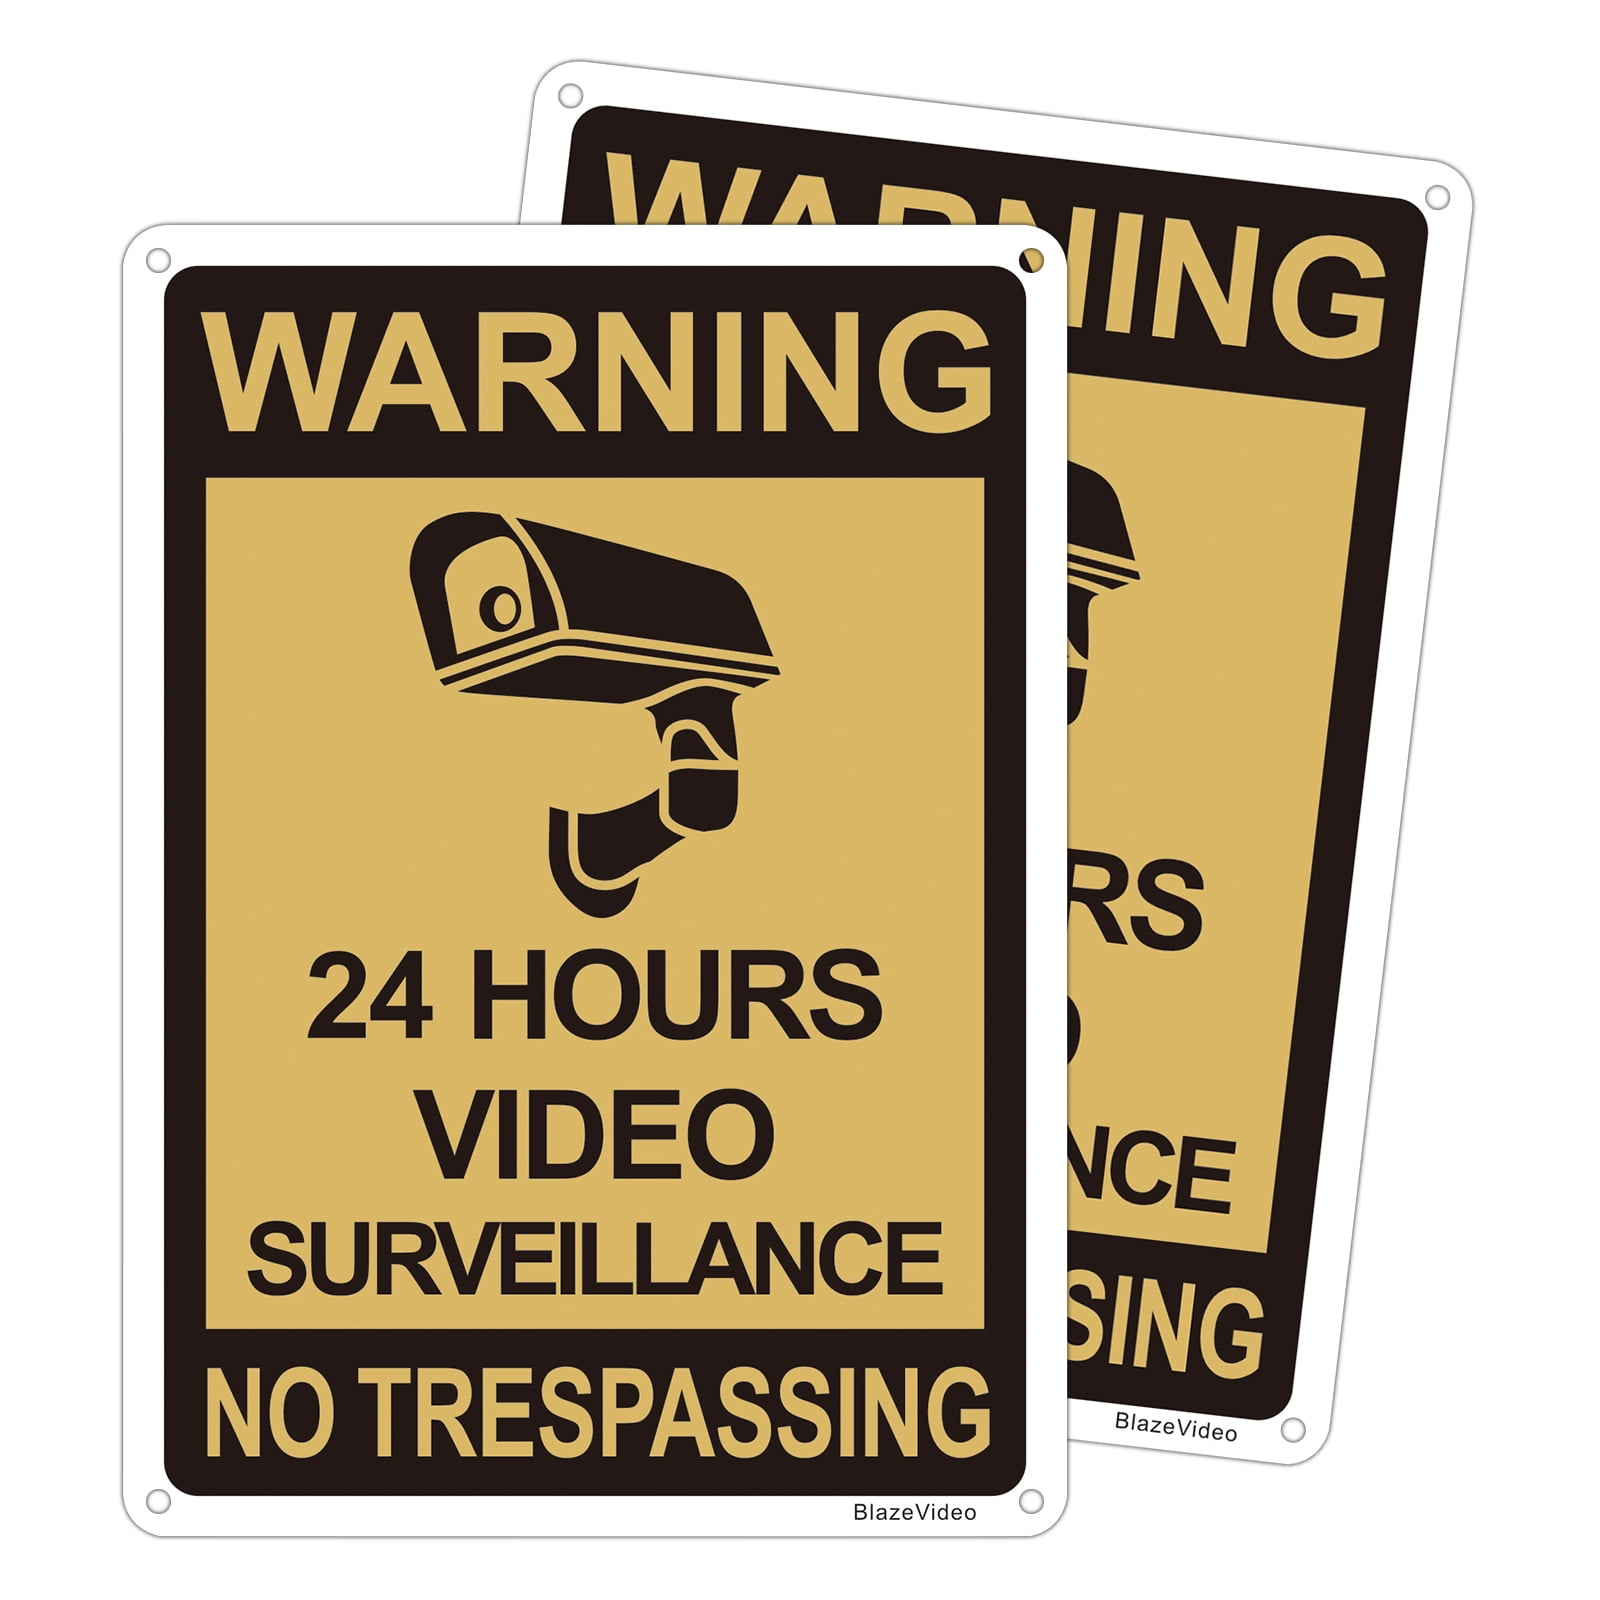 2 VIDEO SURVEILLANCE WARNING SECURITY SIGNs UNDER 24 HOUR CCTV SURVEILLANCE 